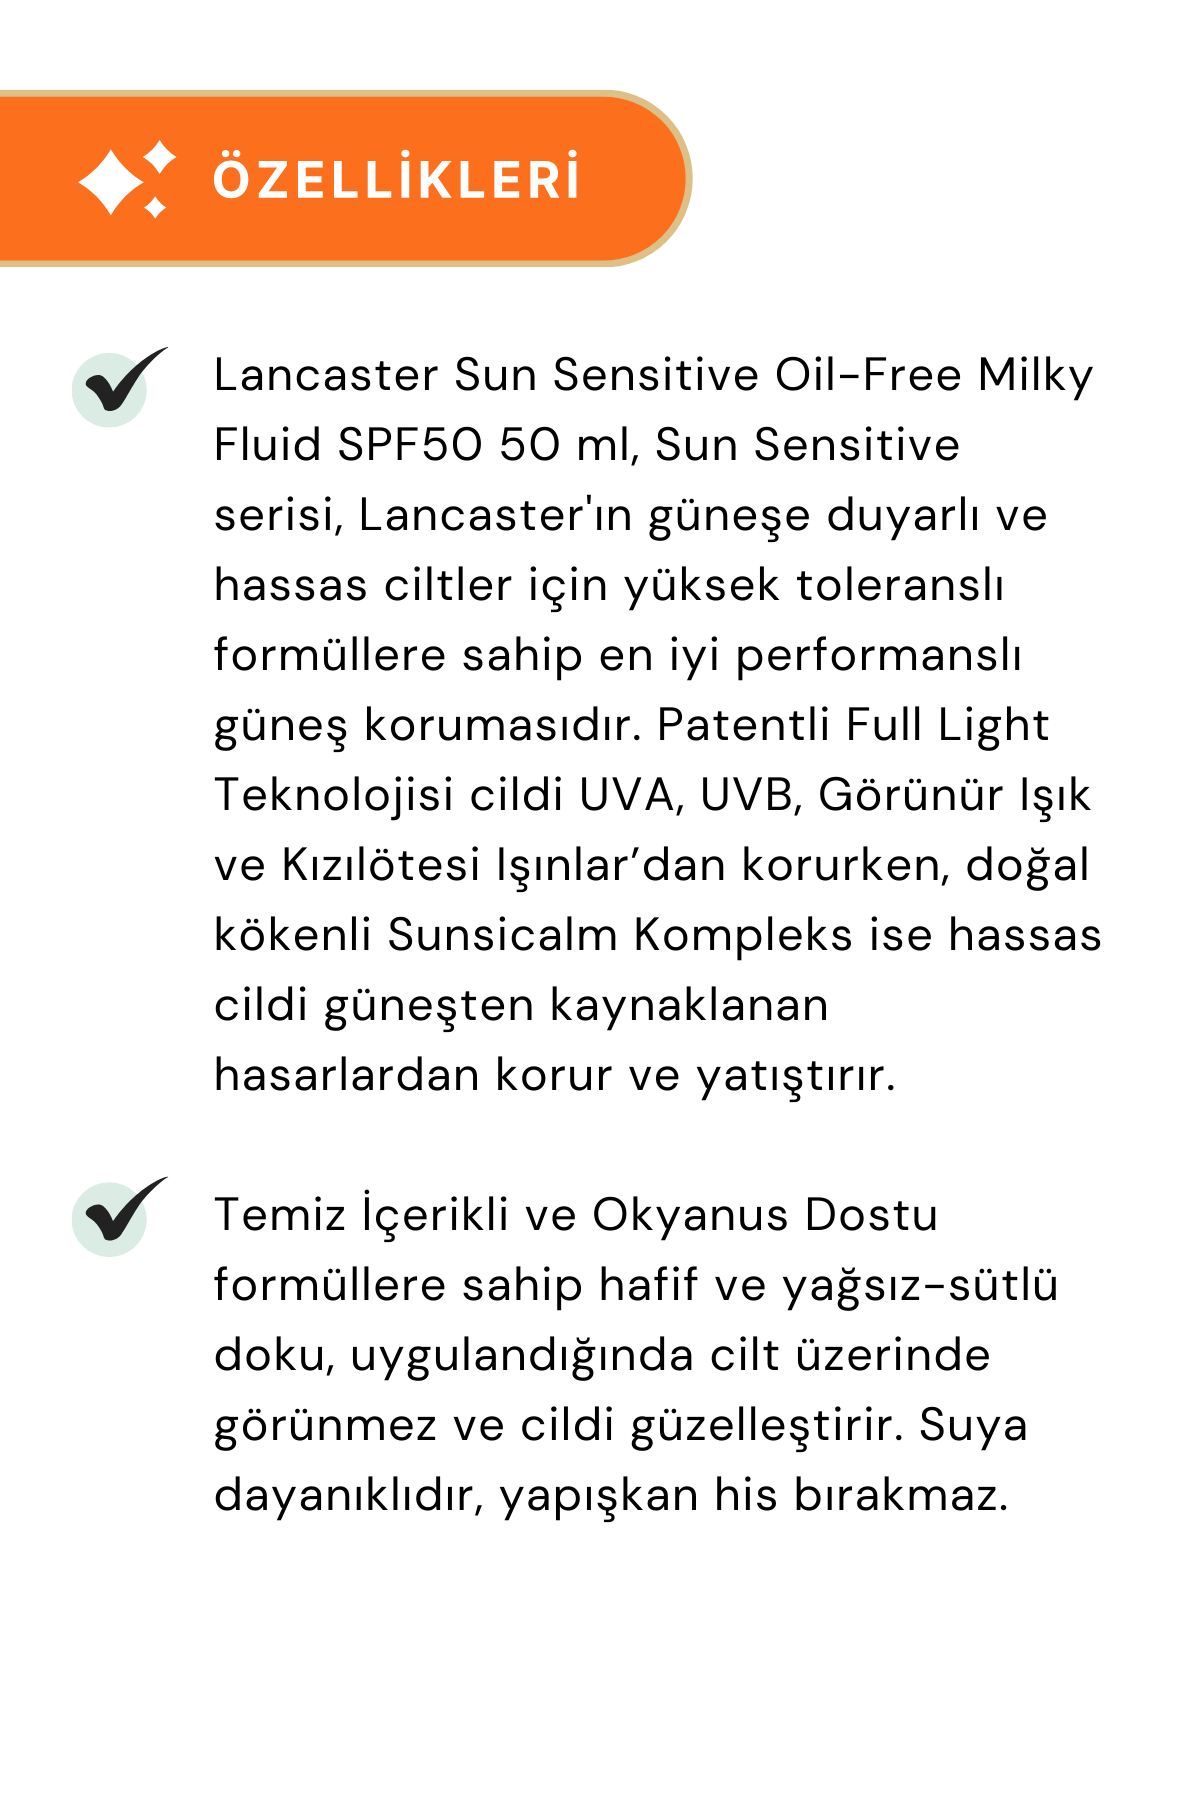 Lancaster Sun Sensitive Oil-Free Milky Fluid SPF50 50 ml - 3 Adet